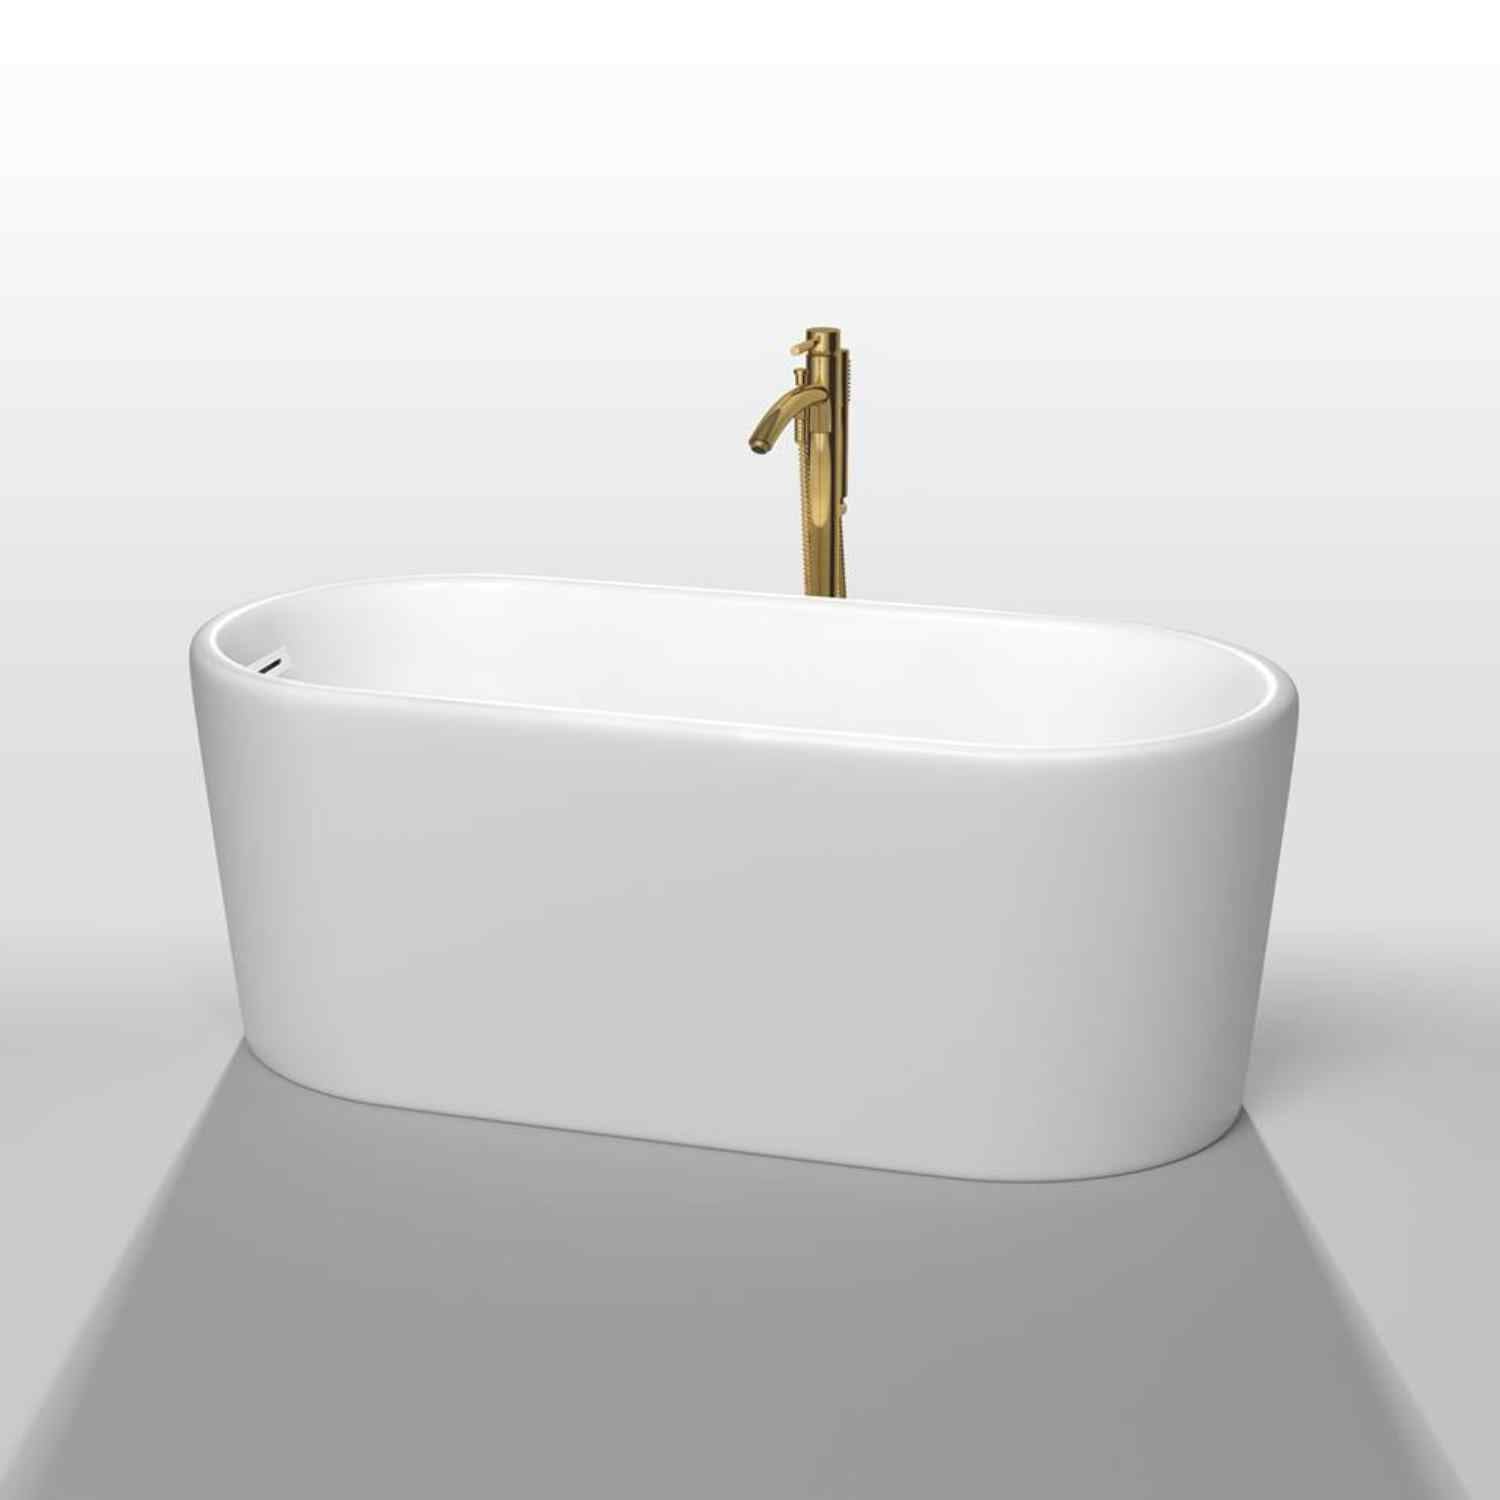 Wyndham collection Ursula 59 Inch Freestanding Bathtub in  Mate White golden